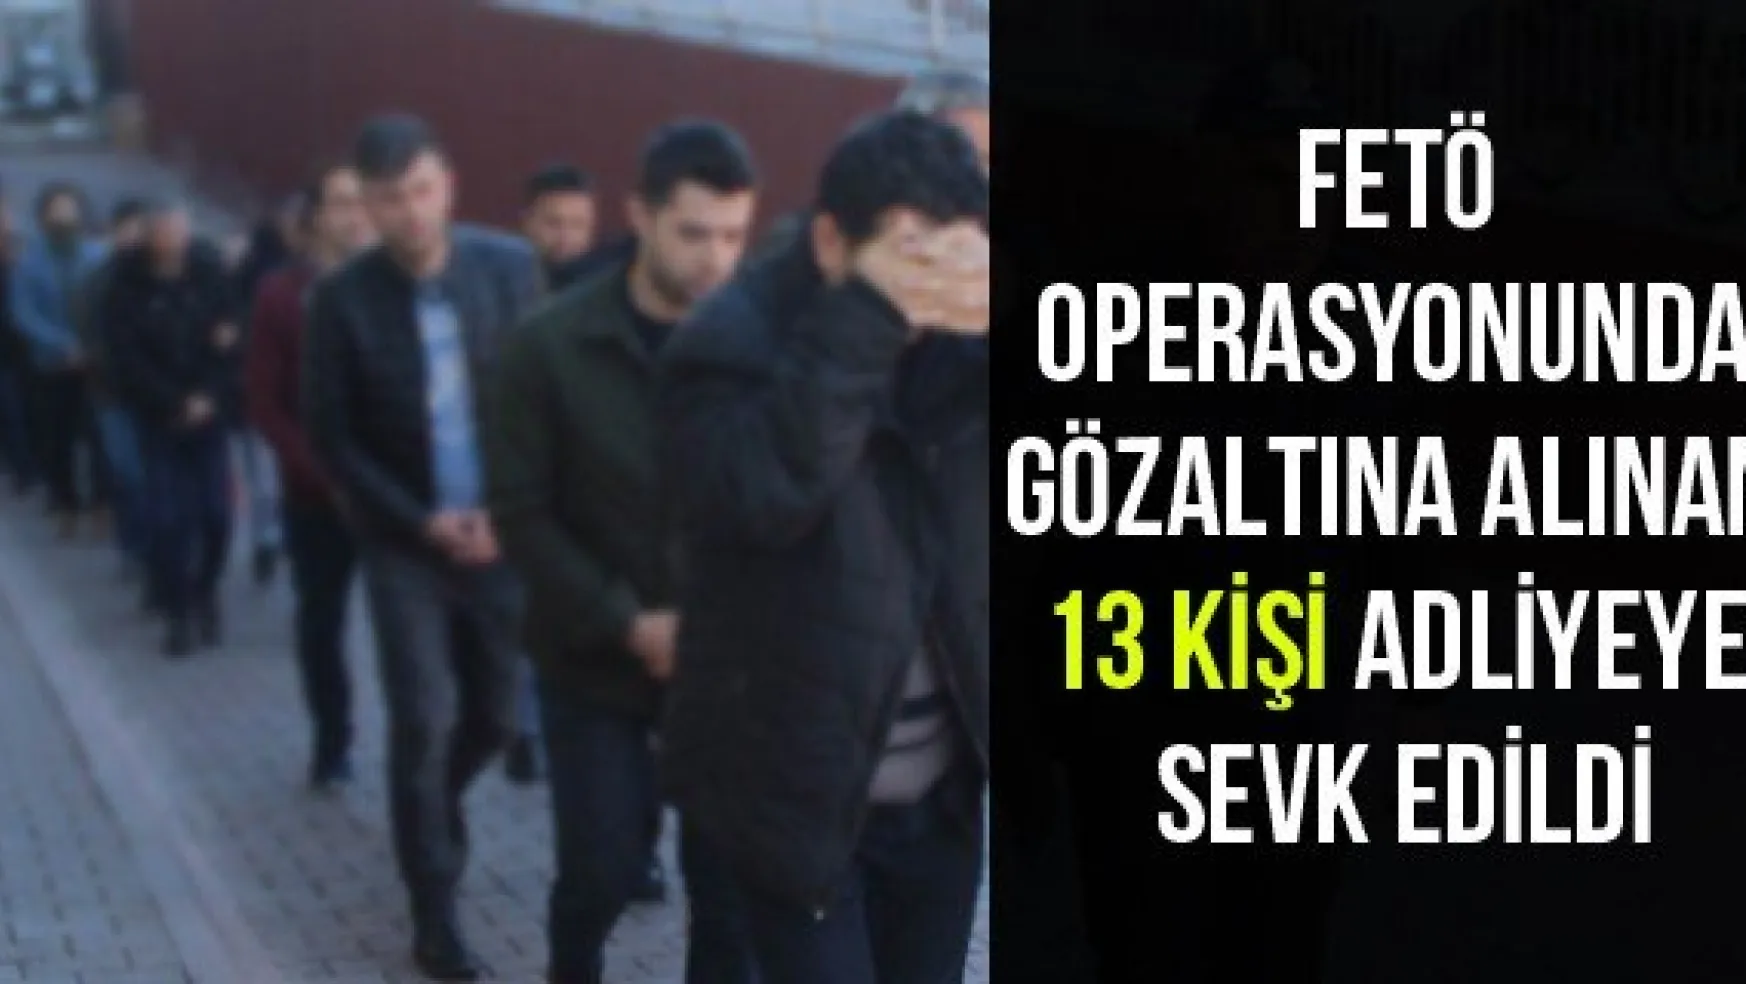 FETÖ operasyonunda gözaltına alınan 13 kişi adliyeye sevk edildi